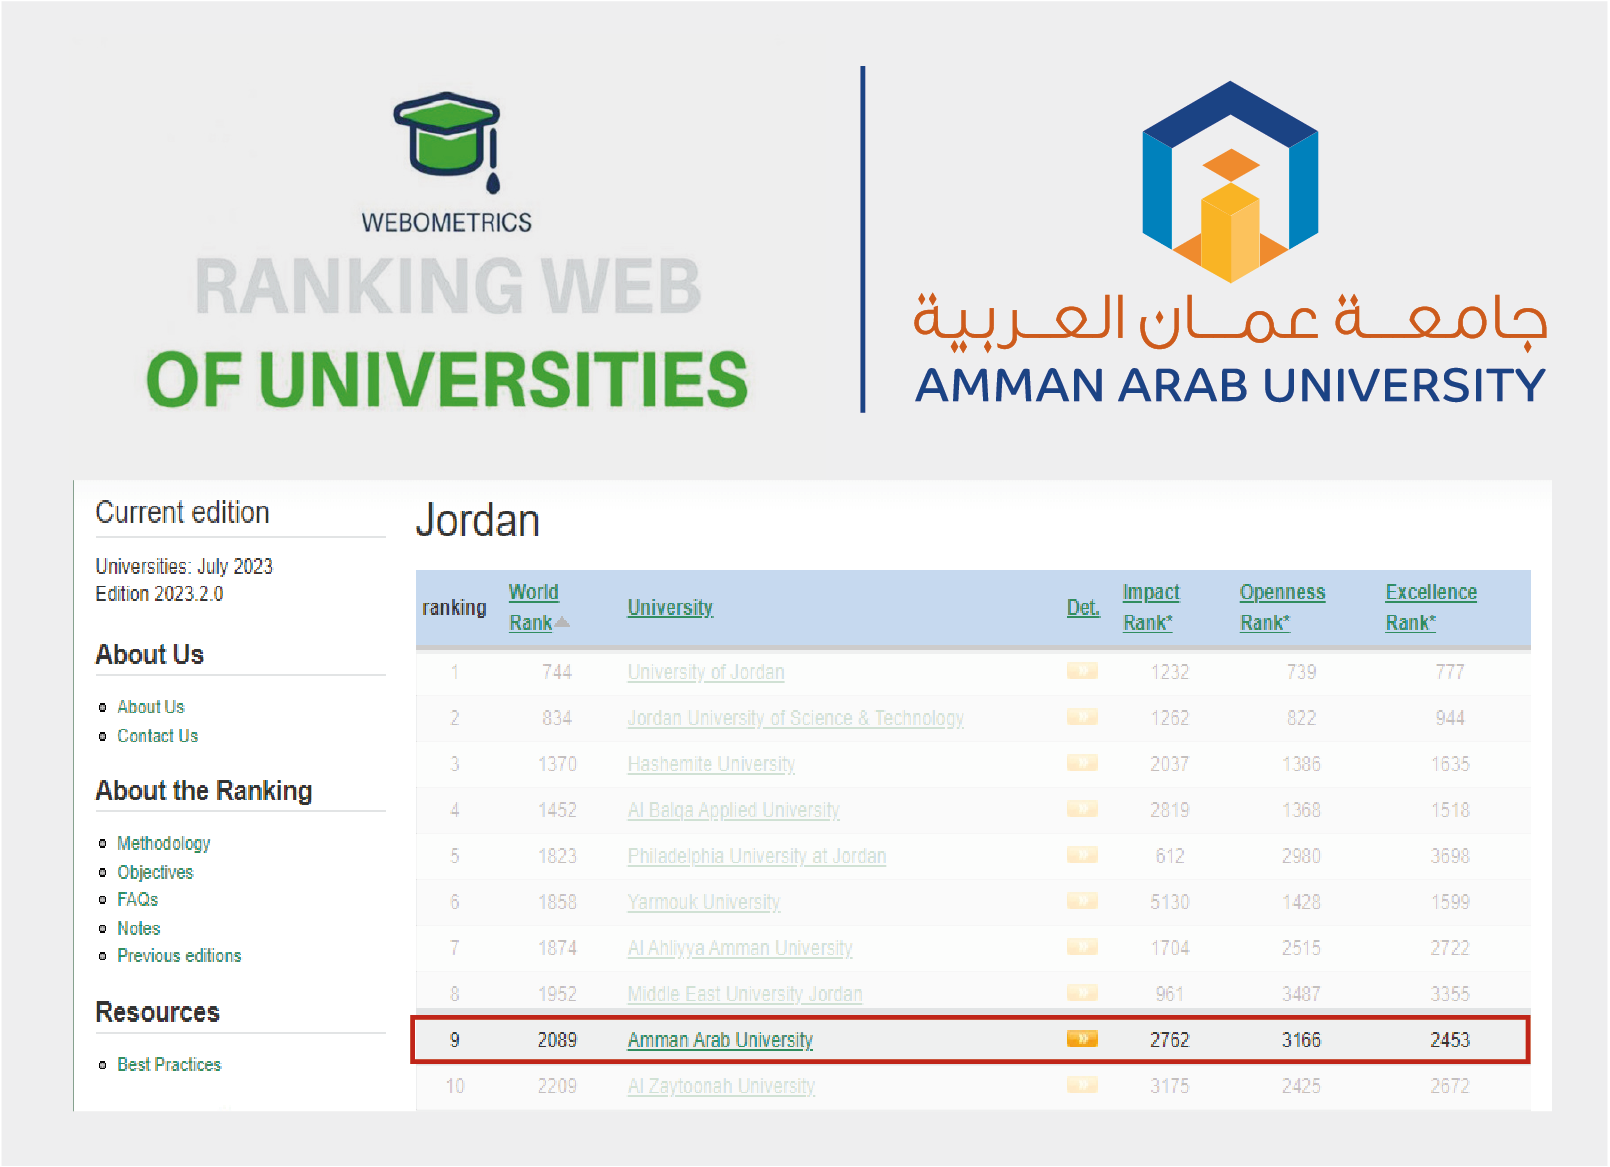 جامعة عمان العربية بالمرتبة التاسعة على مستوى الجامعات الأردنية الرسمية والخاصة بالتصنيف الدولي Webometric 1